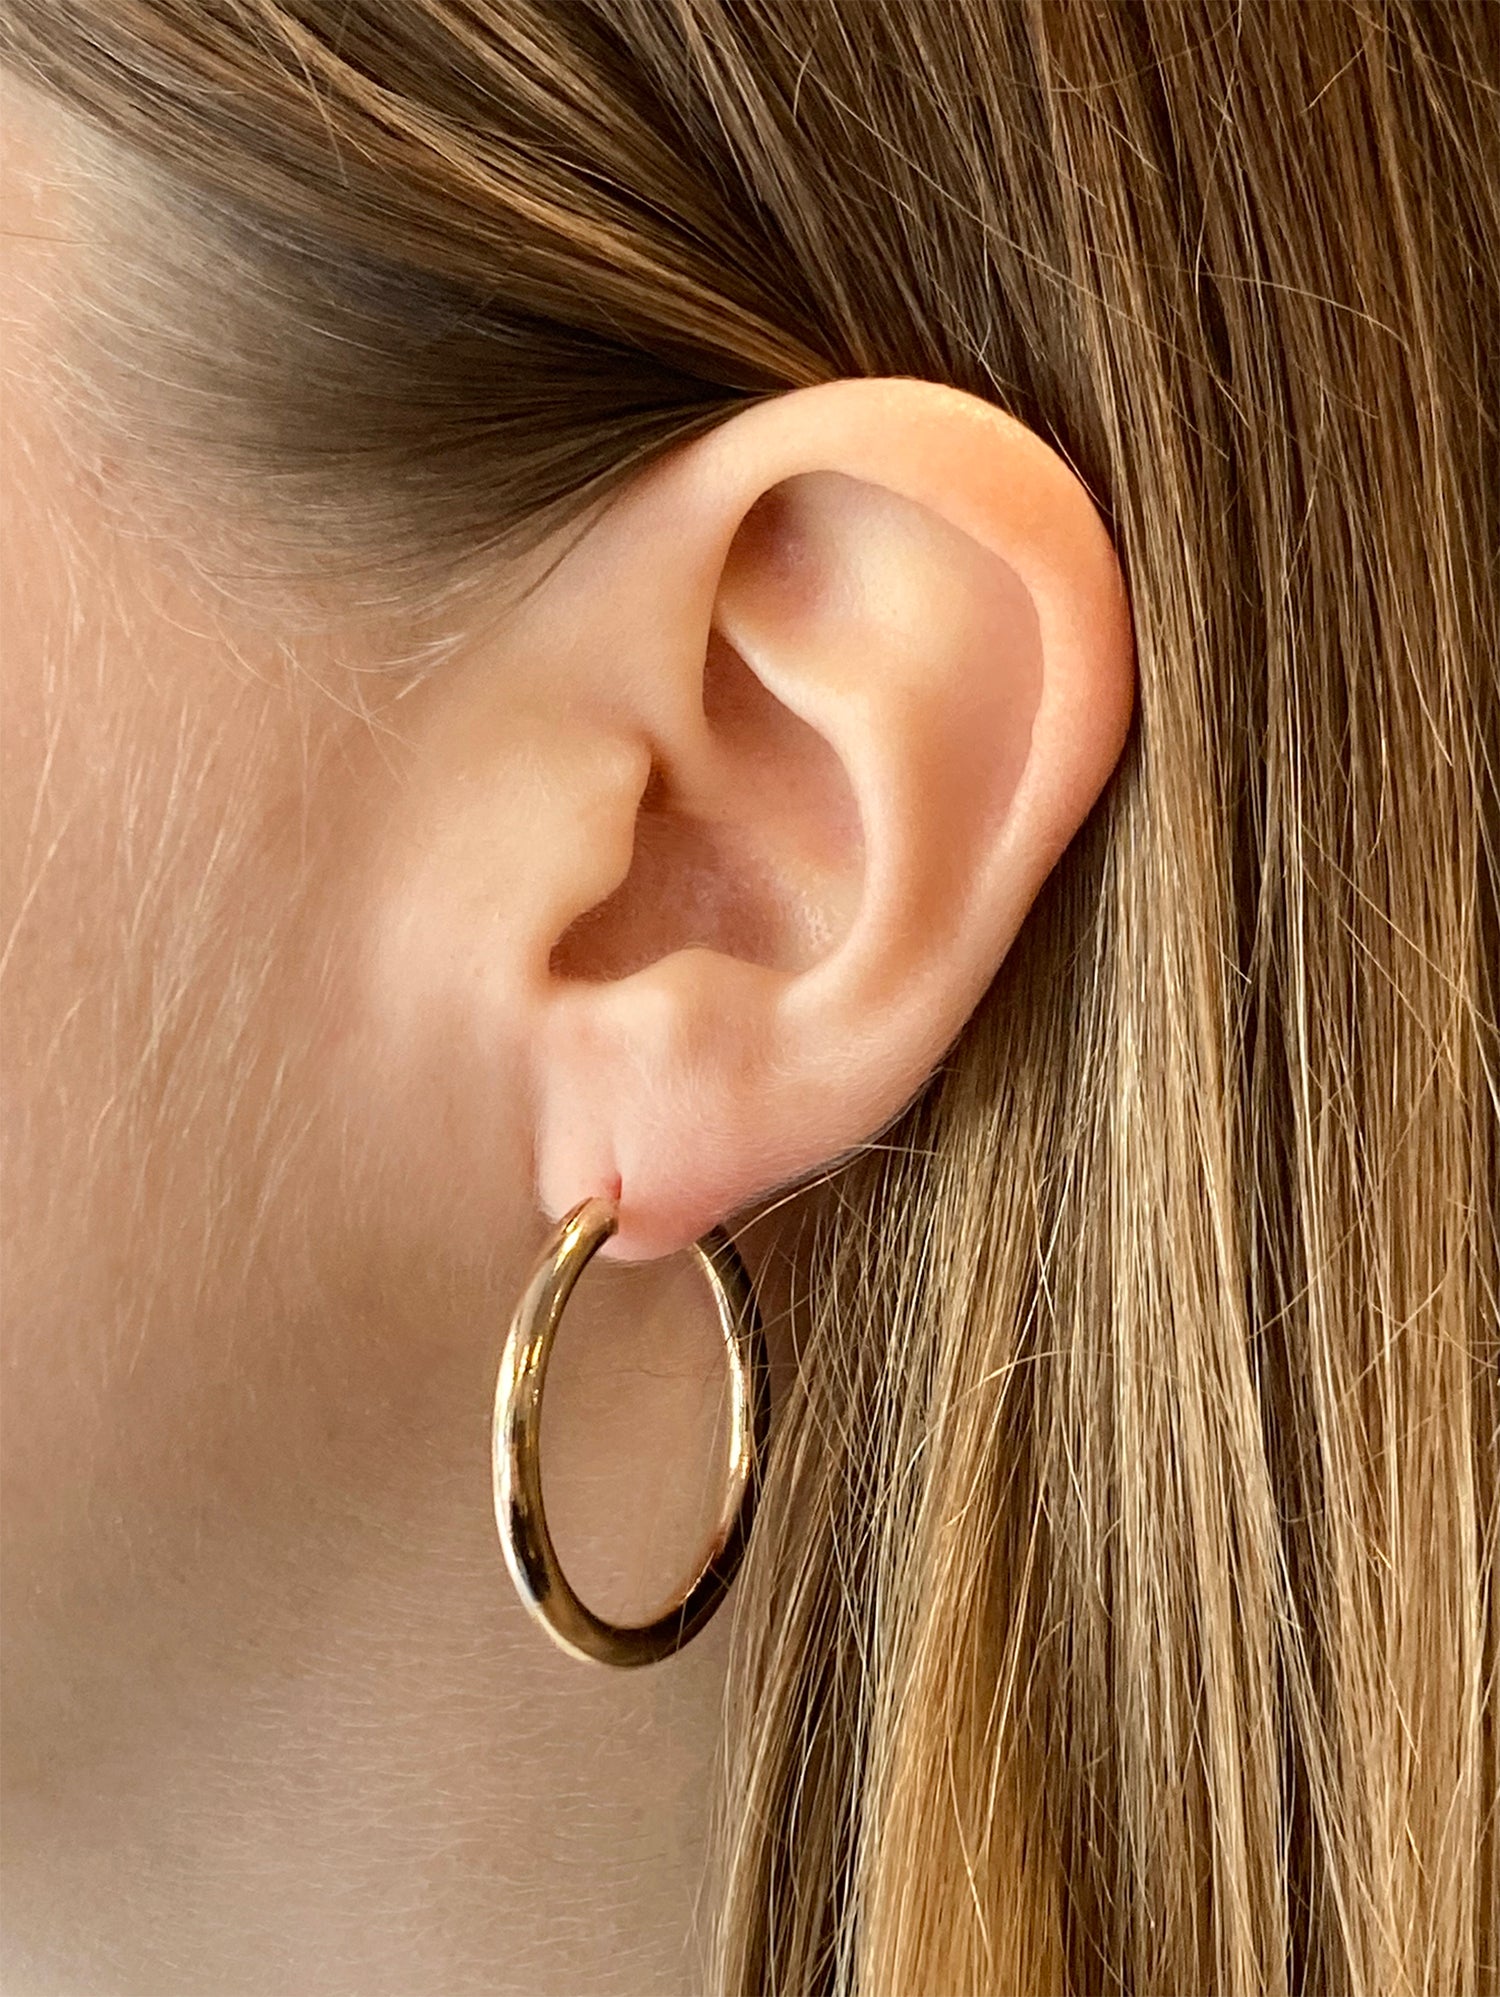 llayers-mens-women-gold-hoop-earrings-minimal-designer-jewelry-in-brookyn-new-york-hoop002-3